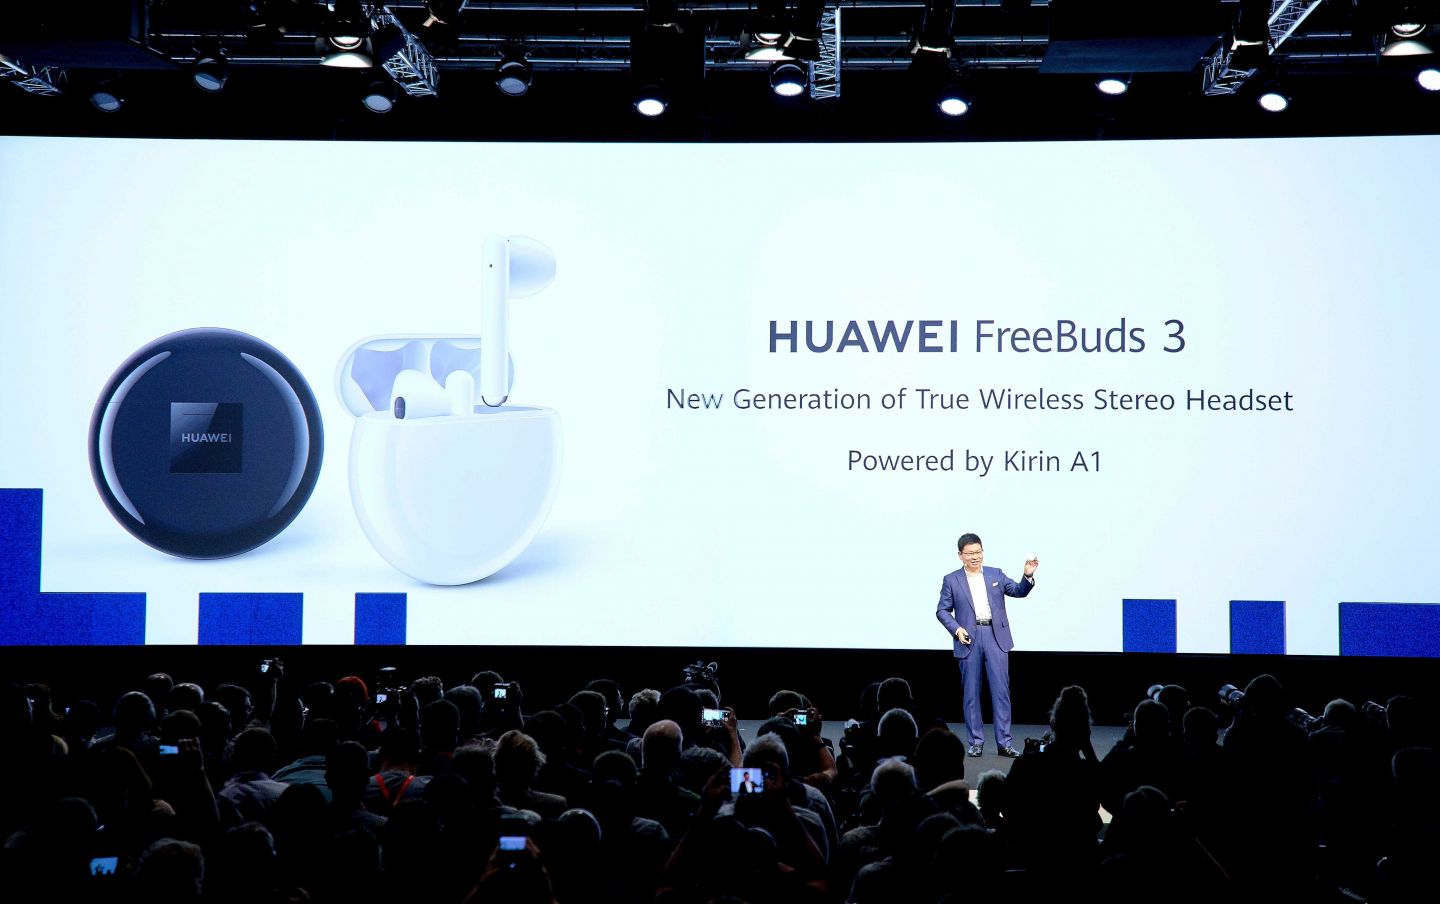 Impulsados por el chip Kirin A1,  HUAWEI FreeBuds 3 inauguran una nueva era de audio inteligente

